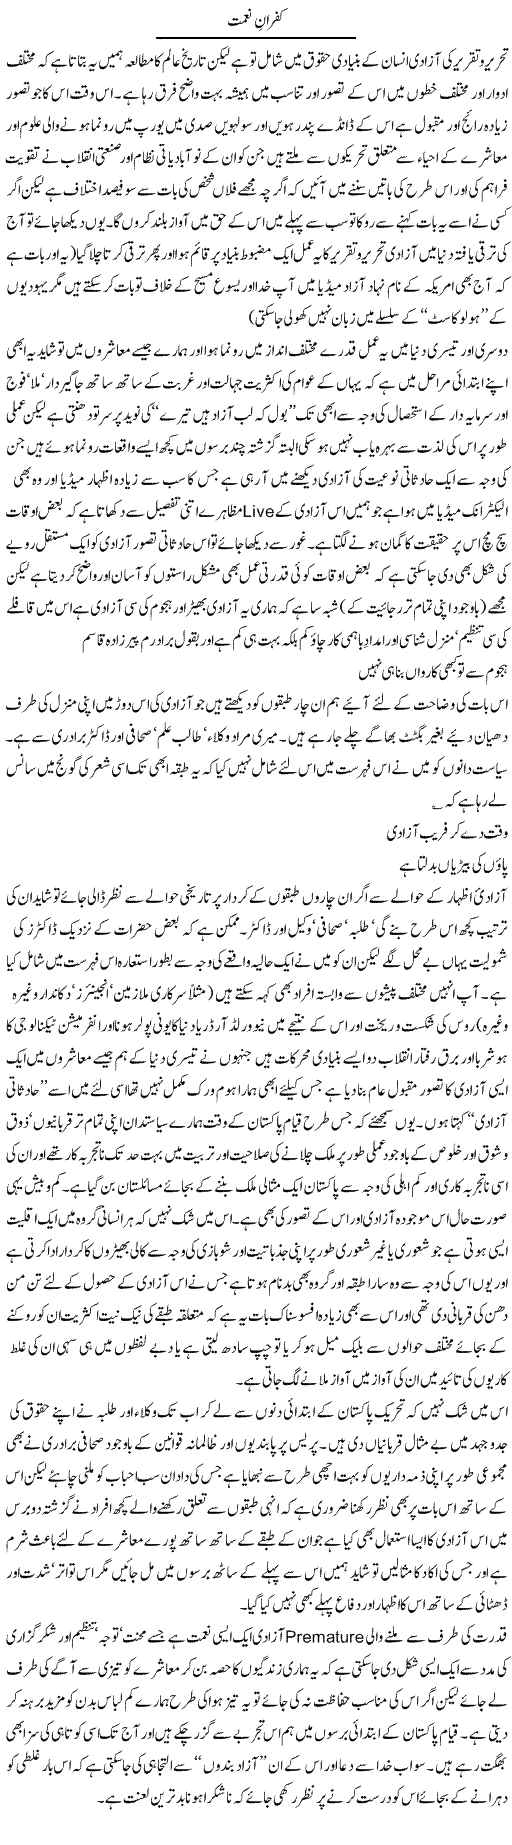 Kafran Neemat Express Column Amjad Islam 15 April 2010